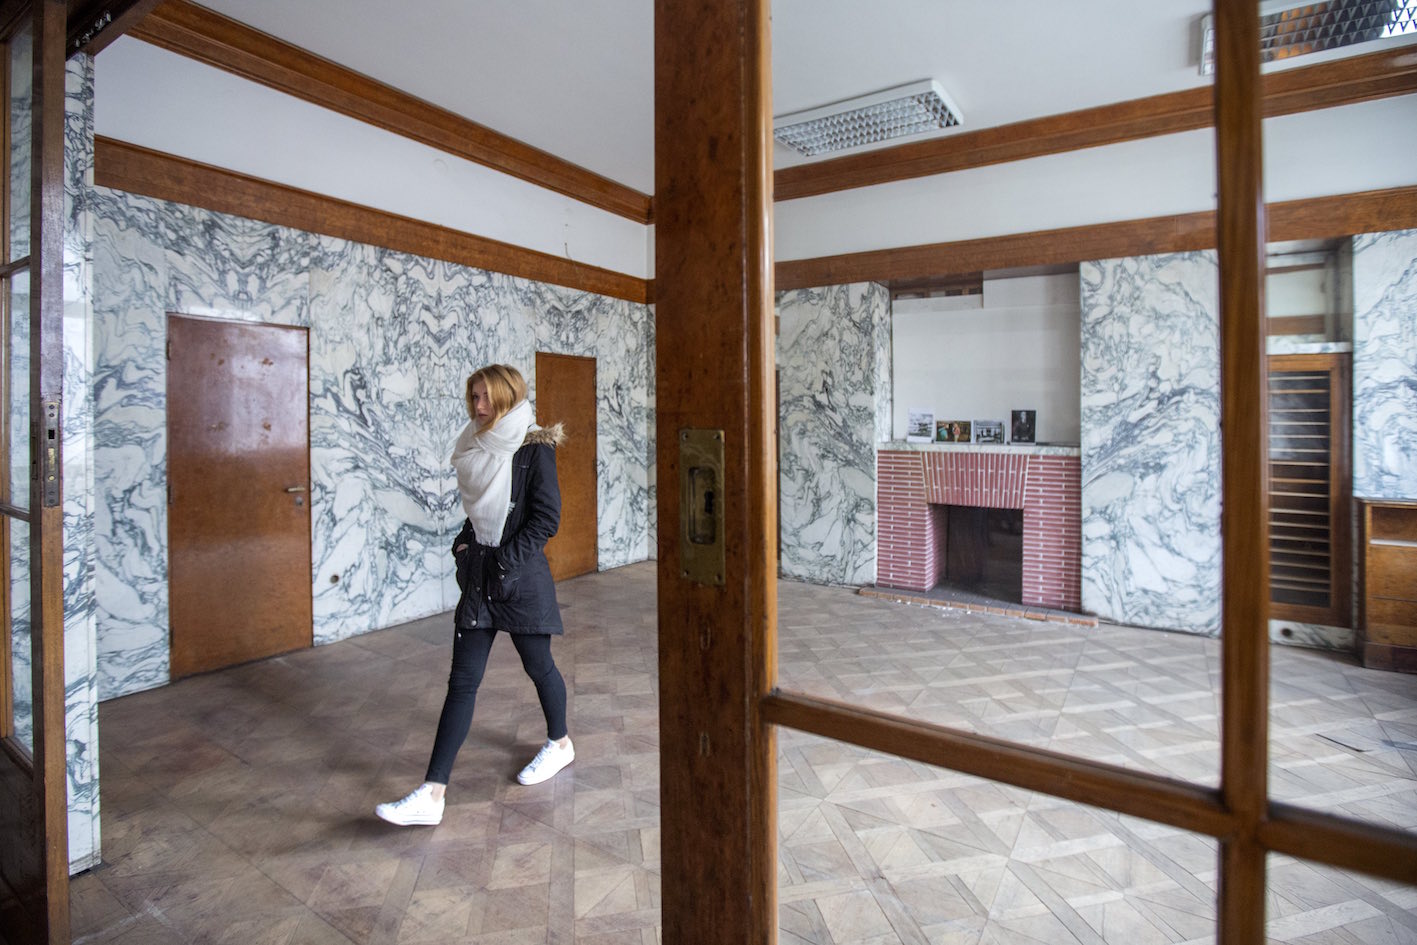 Loosův plzeňský interiér na Klatovské 19 se letos poprvé otevře veřejnosti již tuto sobotu